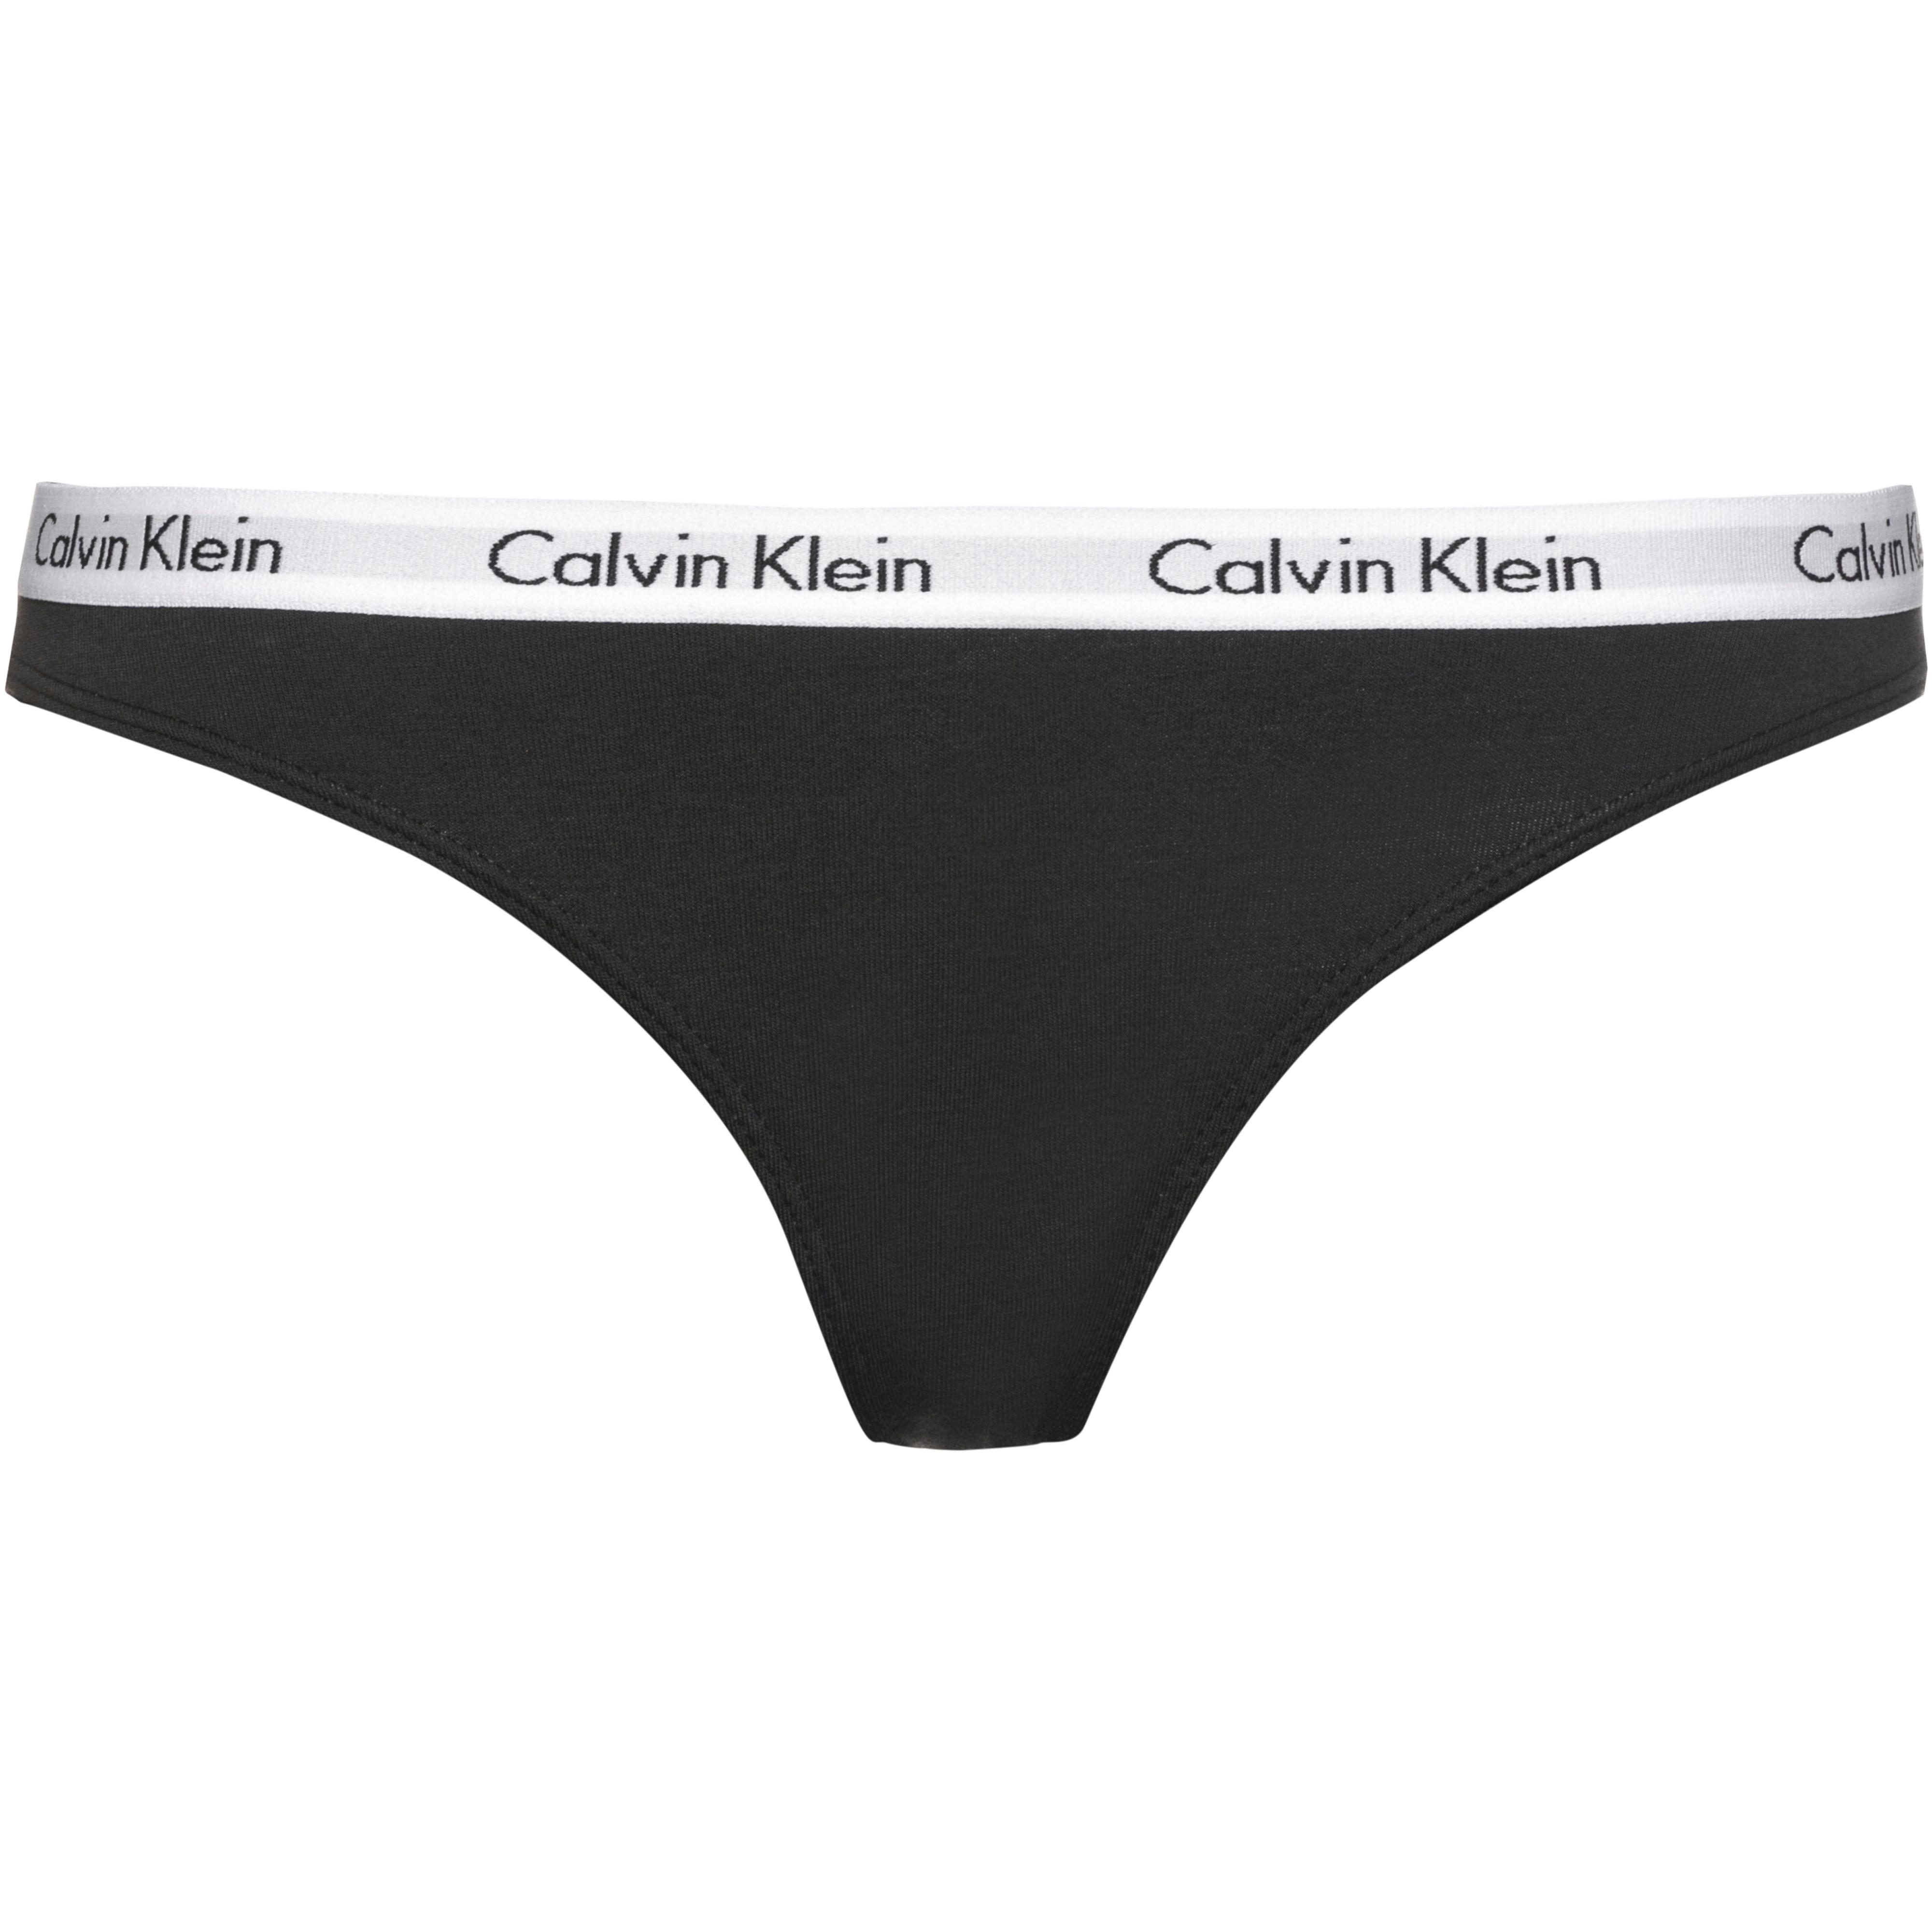 Calvin Klein Unterhose Damen black im Online Shop von SportScheck